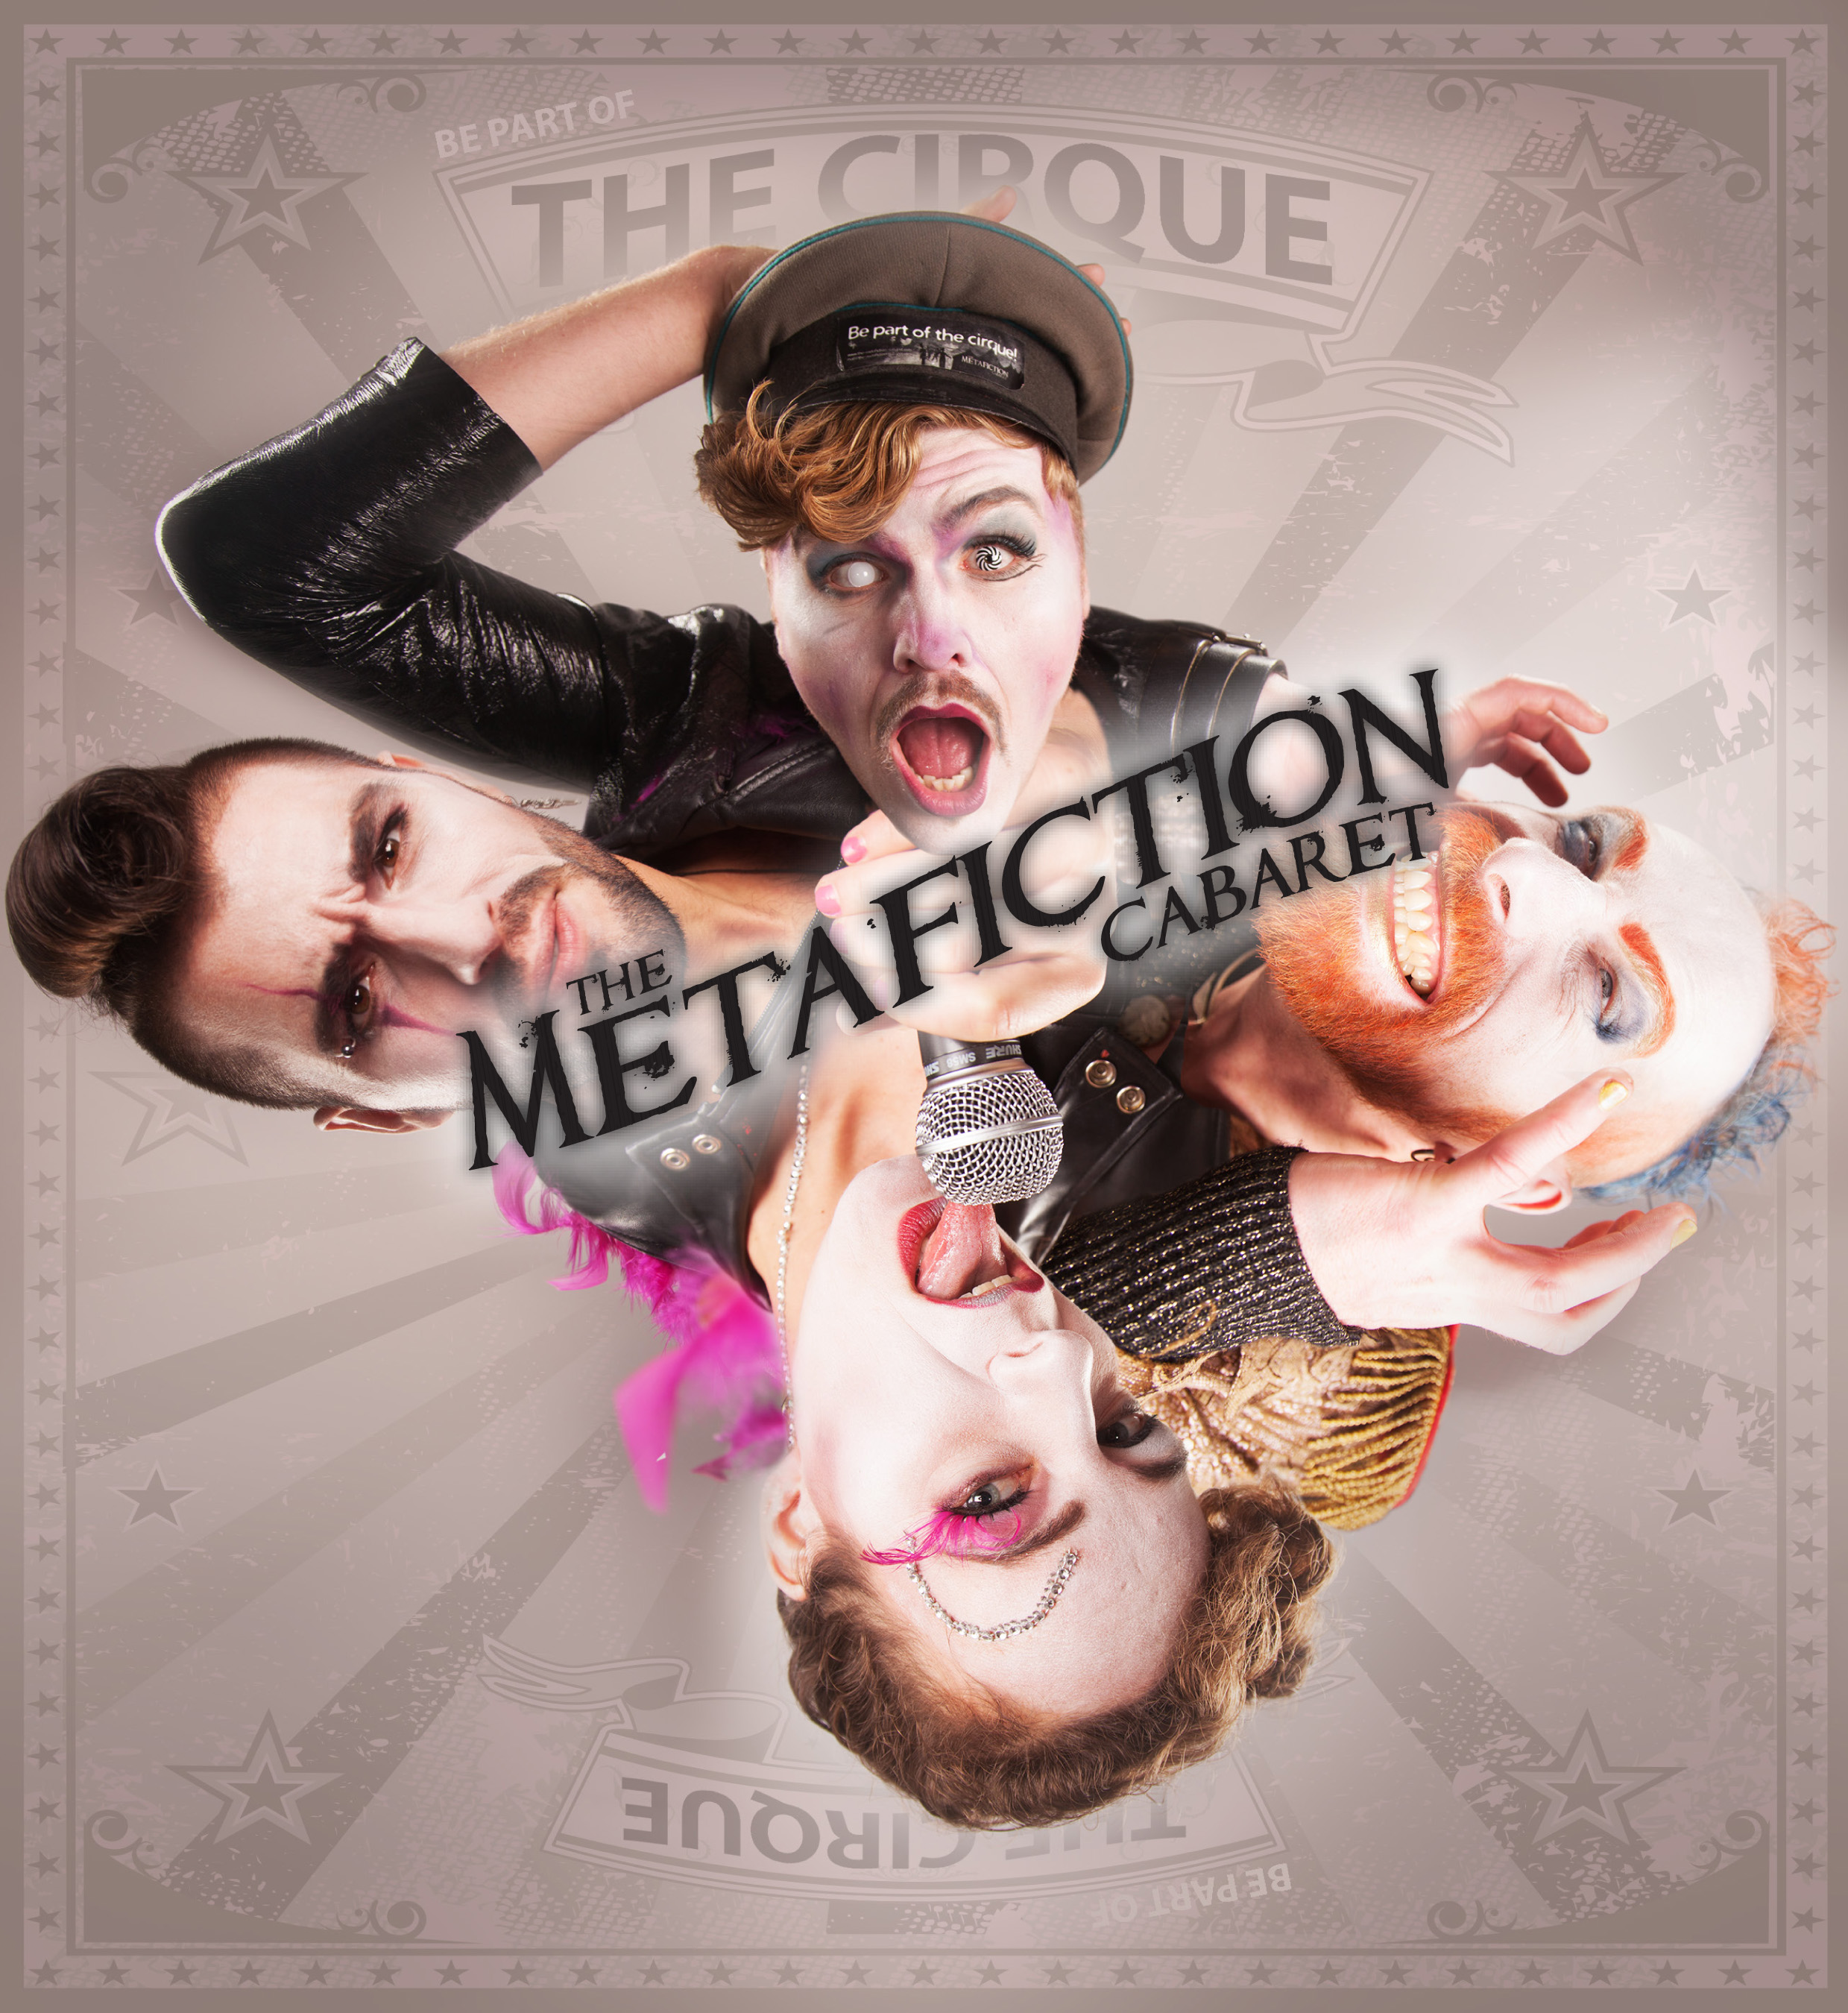 ALBUM-RELEASE KARTE - The Metafiction Cabaret - Das Neue Album